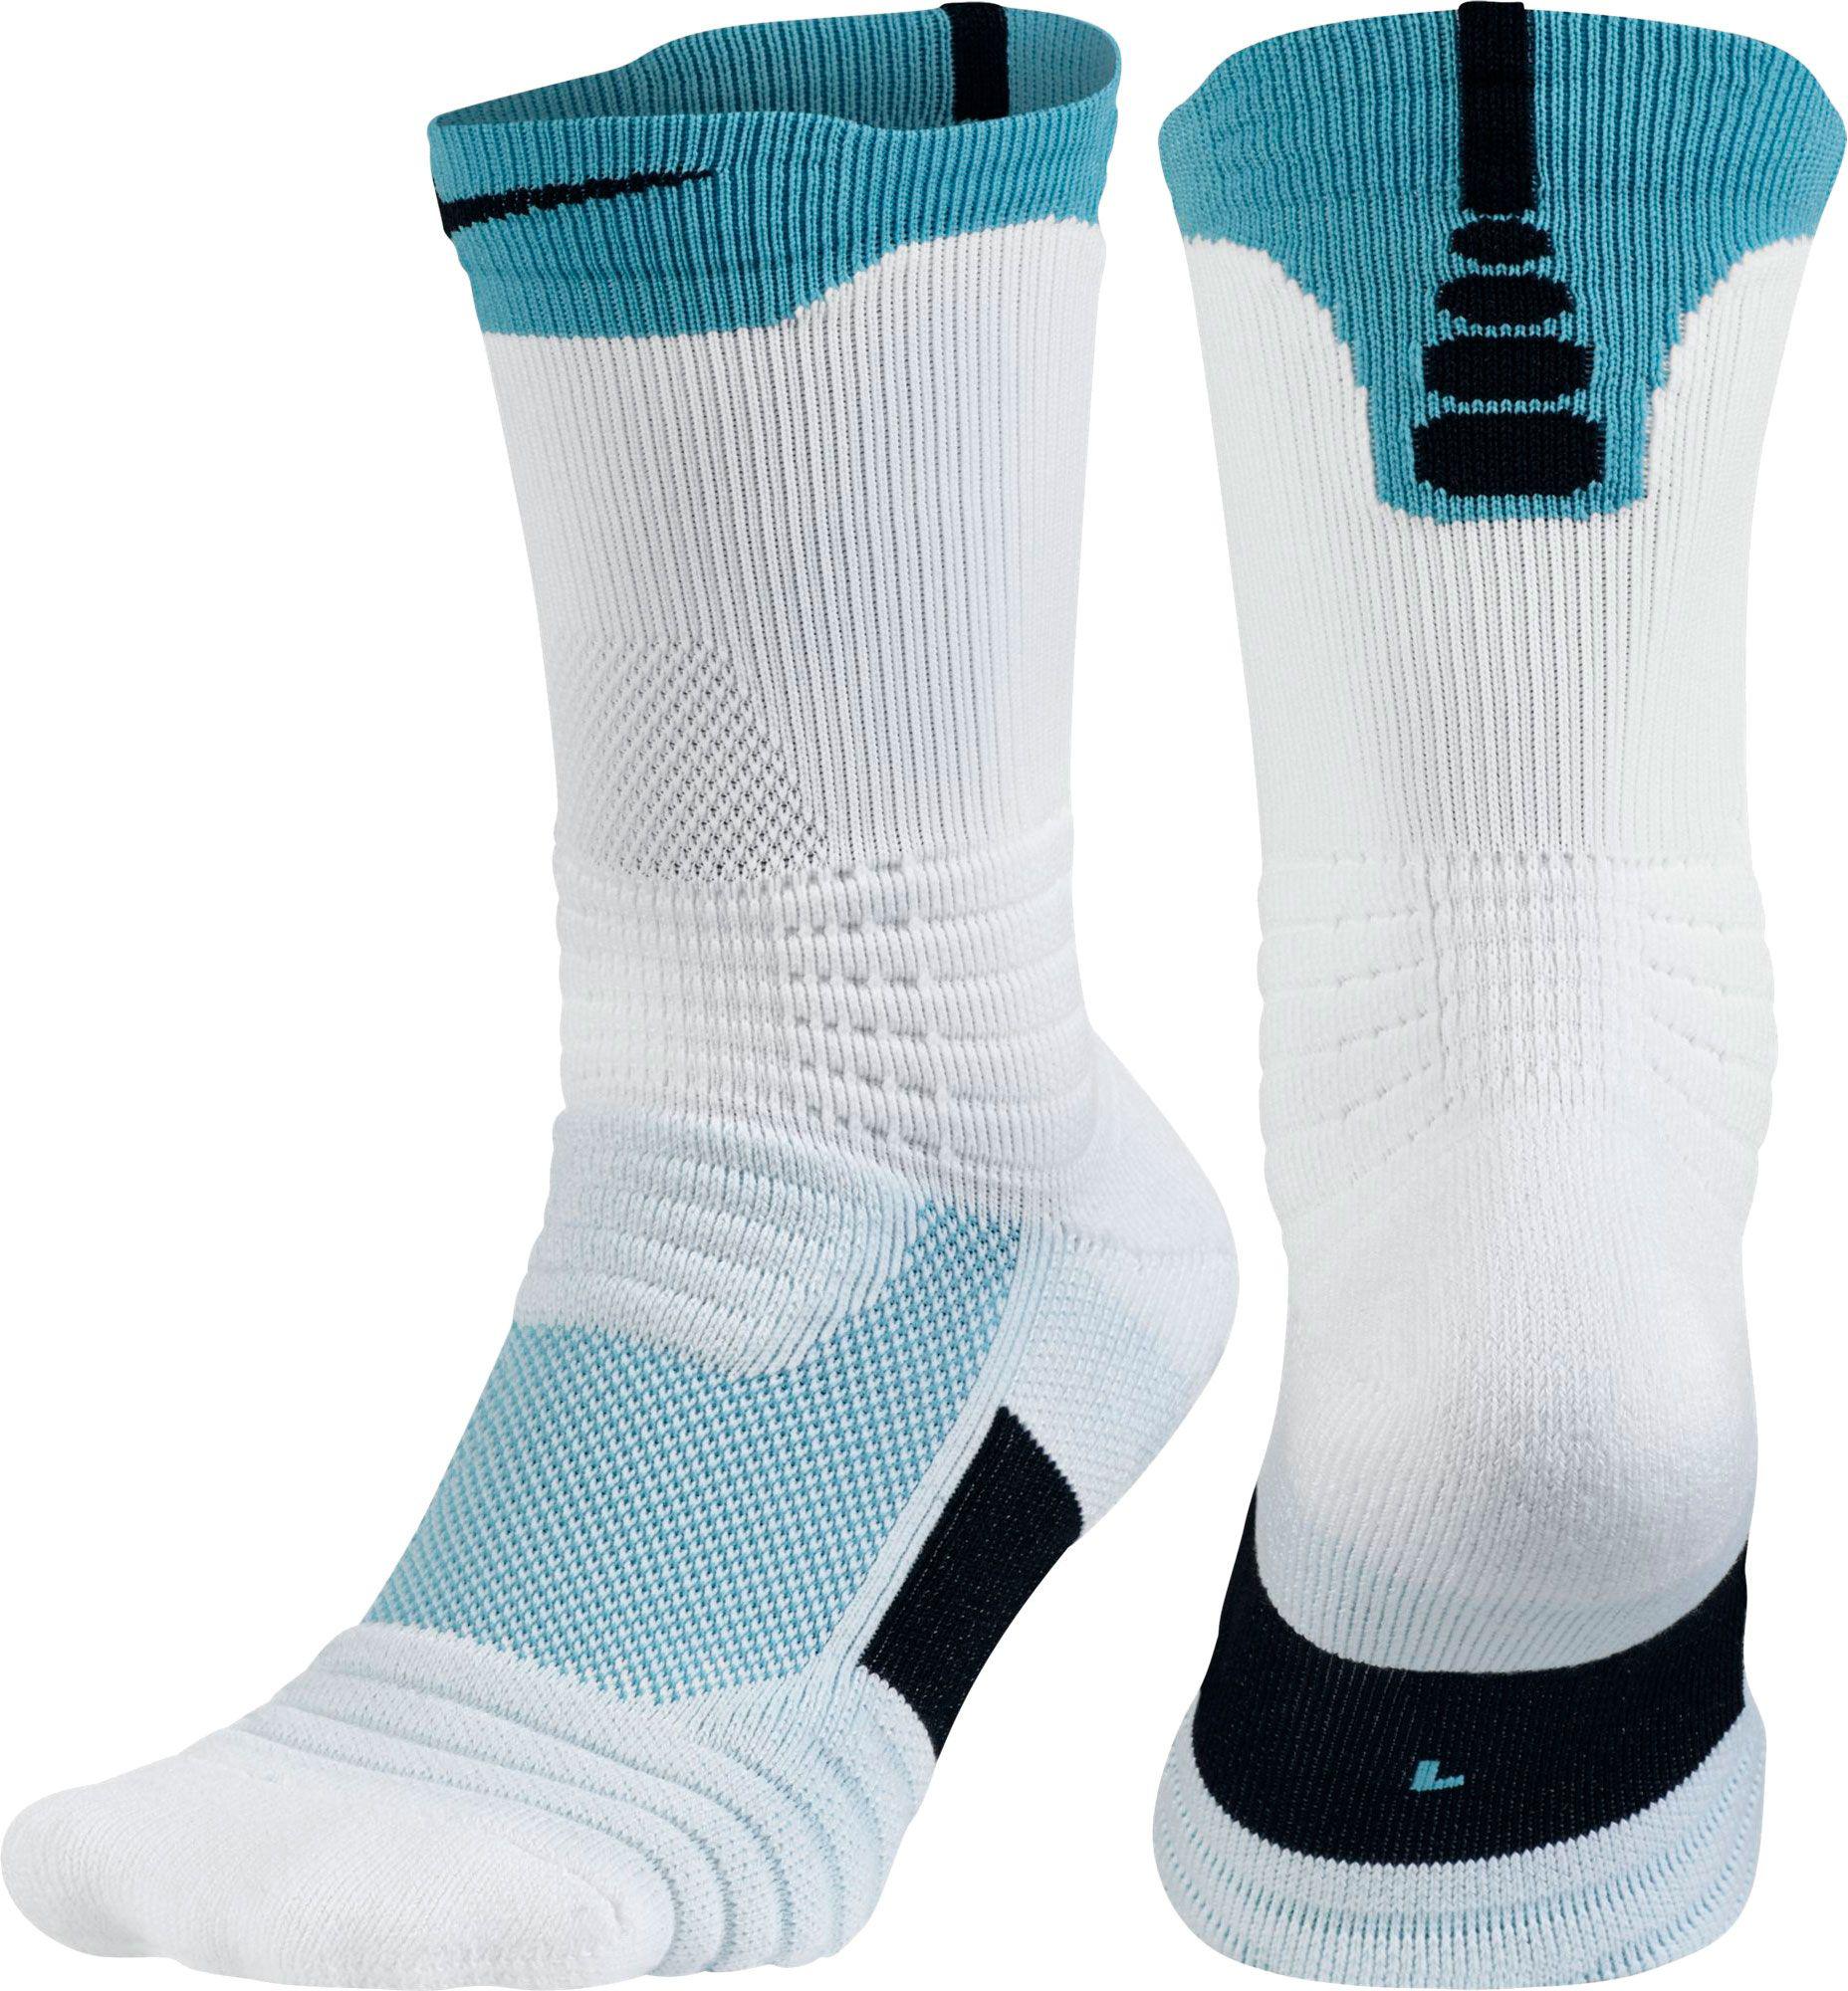 nike socks for basketball 1